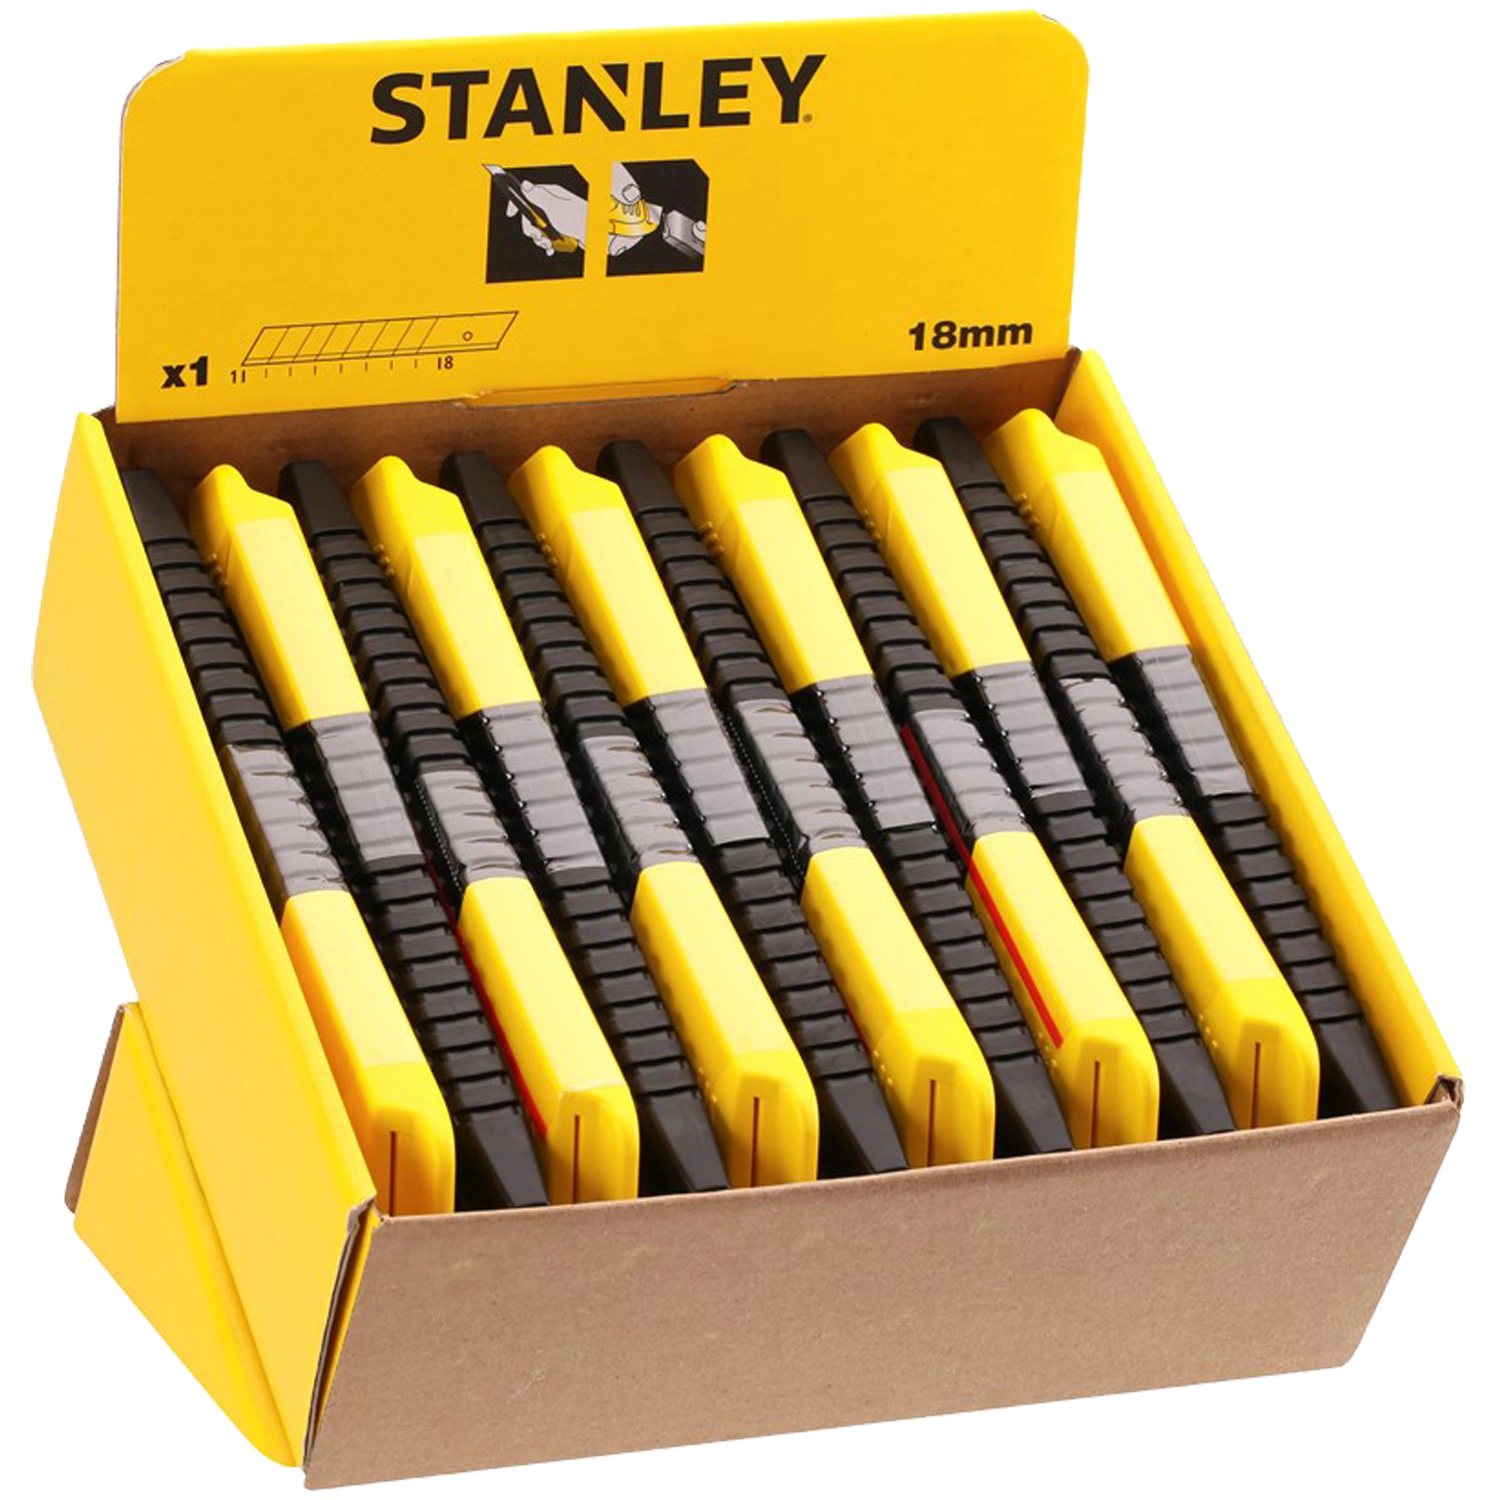 Geelzwart Stanley breekmes. 9 afbreekmesjes. Gele drukschuifknop. Schuifbaar uiteinde voor verwijderen mes.